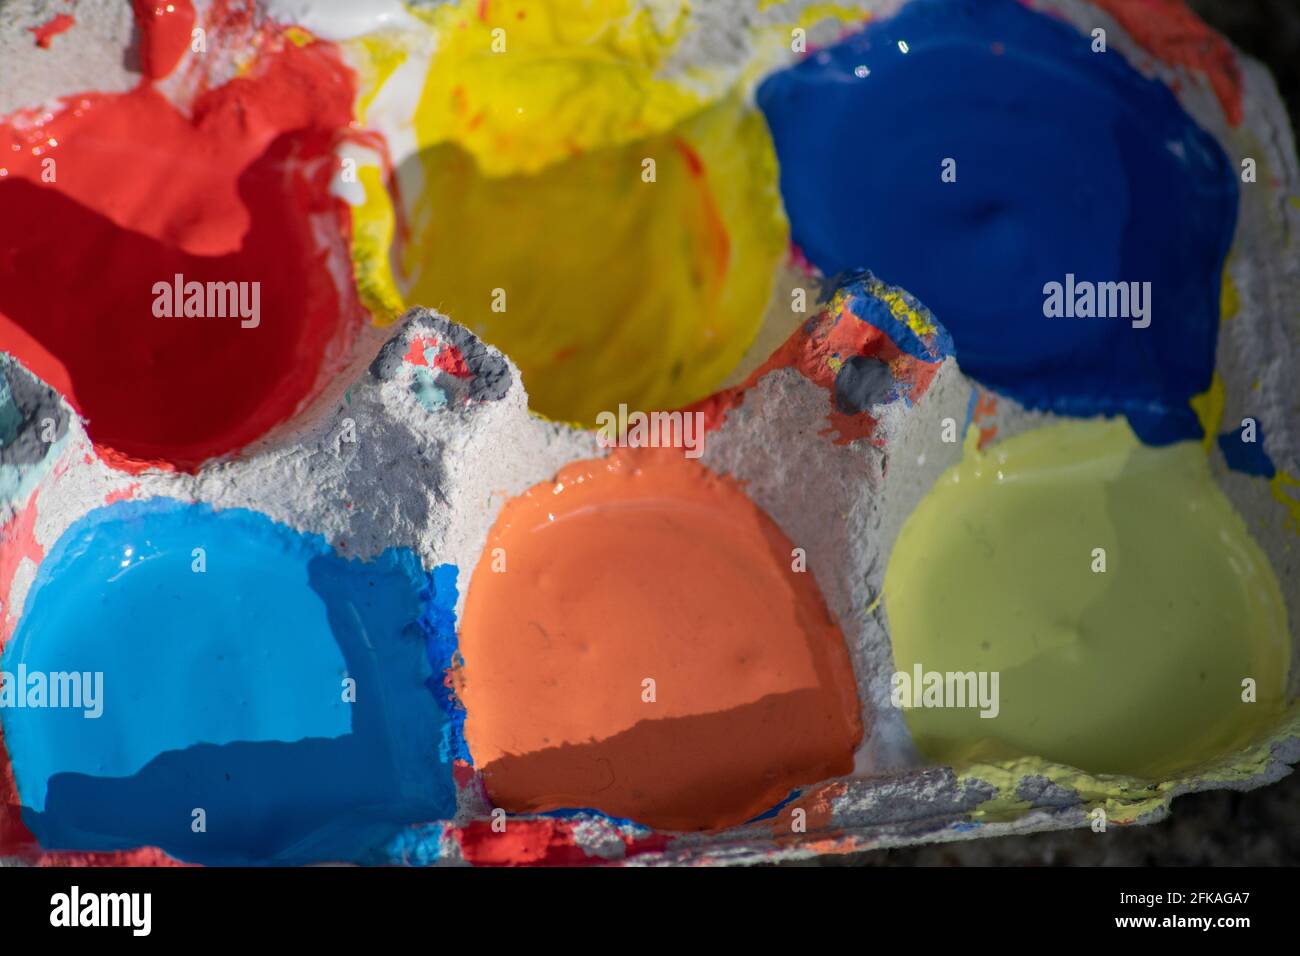 Boîte à œufs de différentes couleurs pour les enfants, utilisée dans les expressions artistiques. Expressions artistiques utilisant des teintes colorées, l'apprentissage de l'art et la signification des couleurs. Banque D'Images